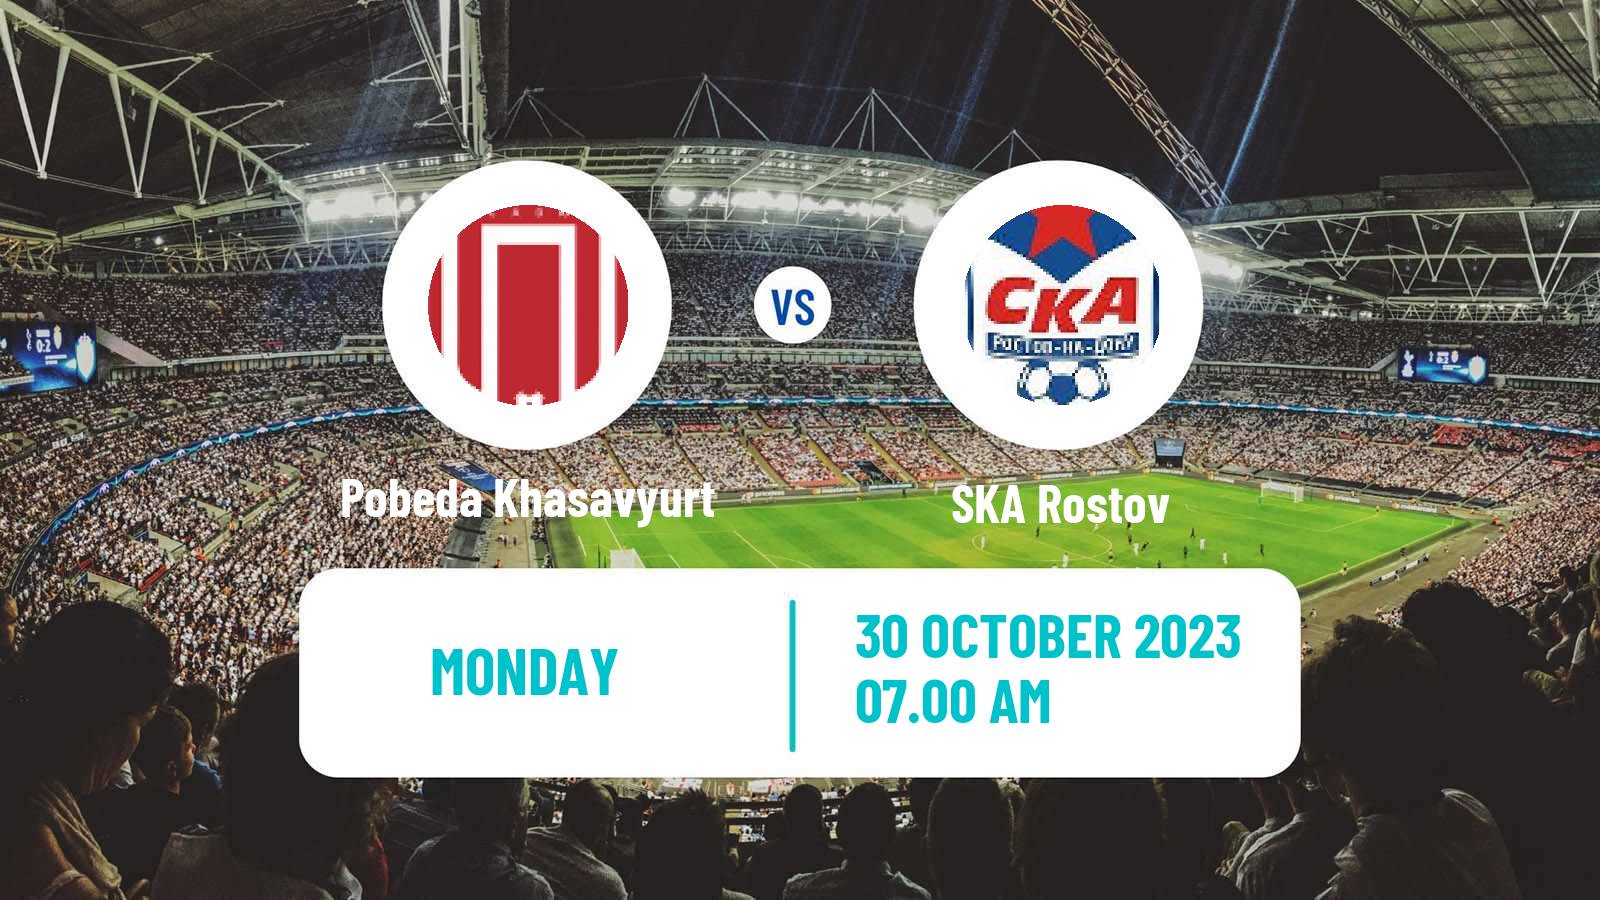 Soccer FNL 2 Division B Group 1 Pobeda Khasavyurt - SKA Rostov